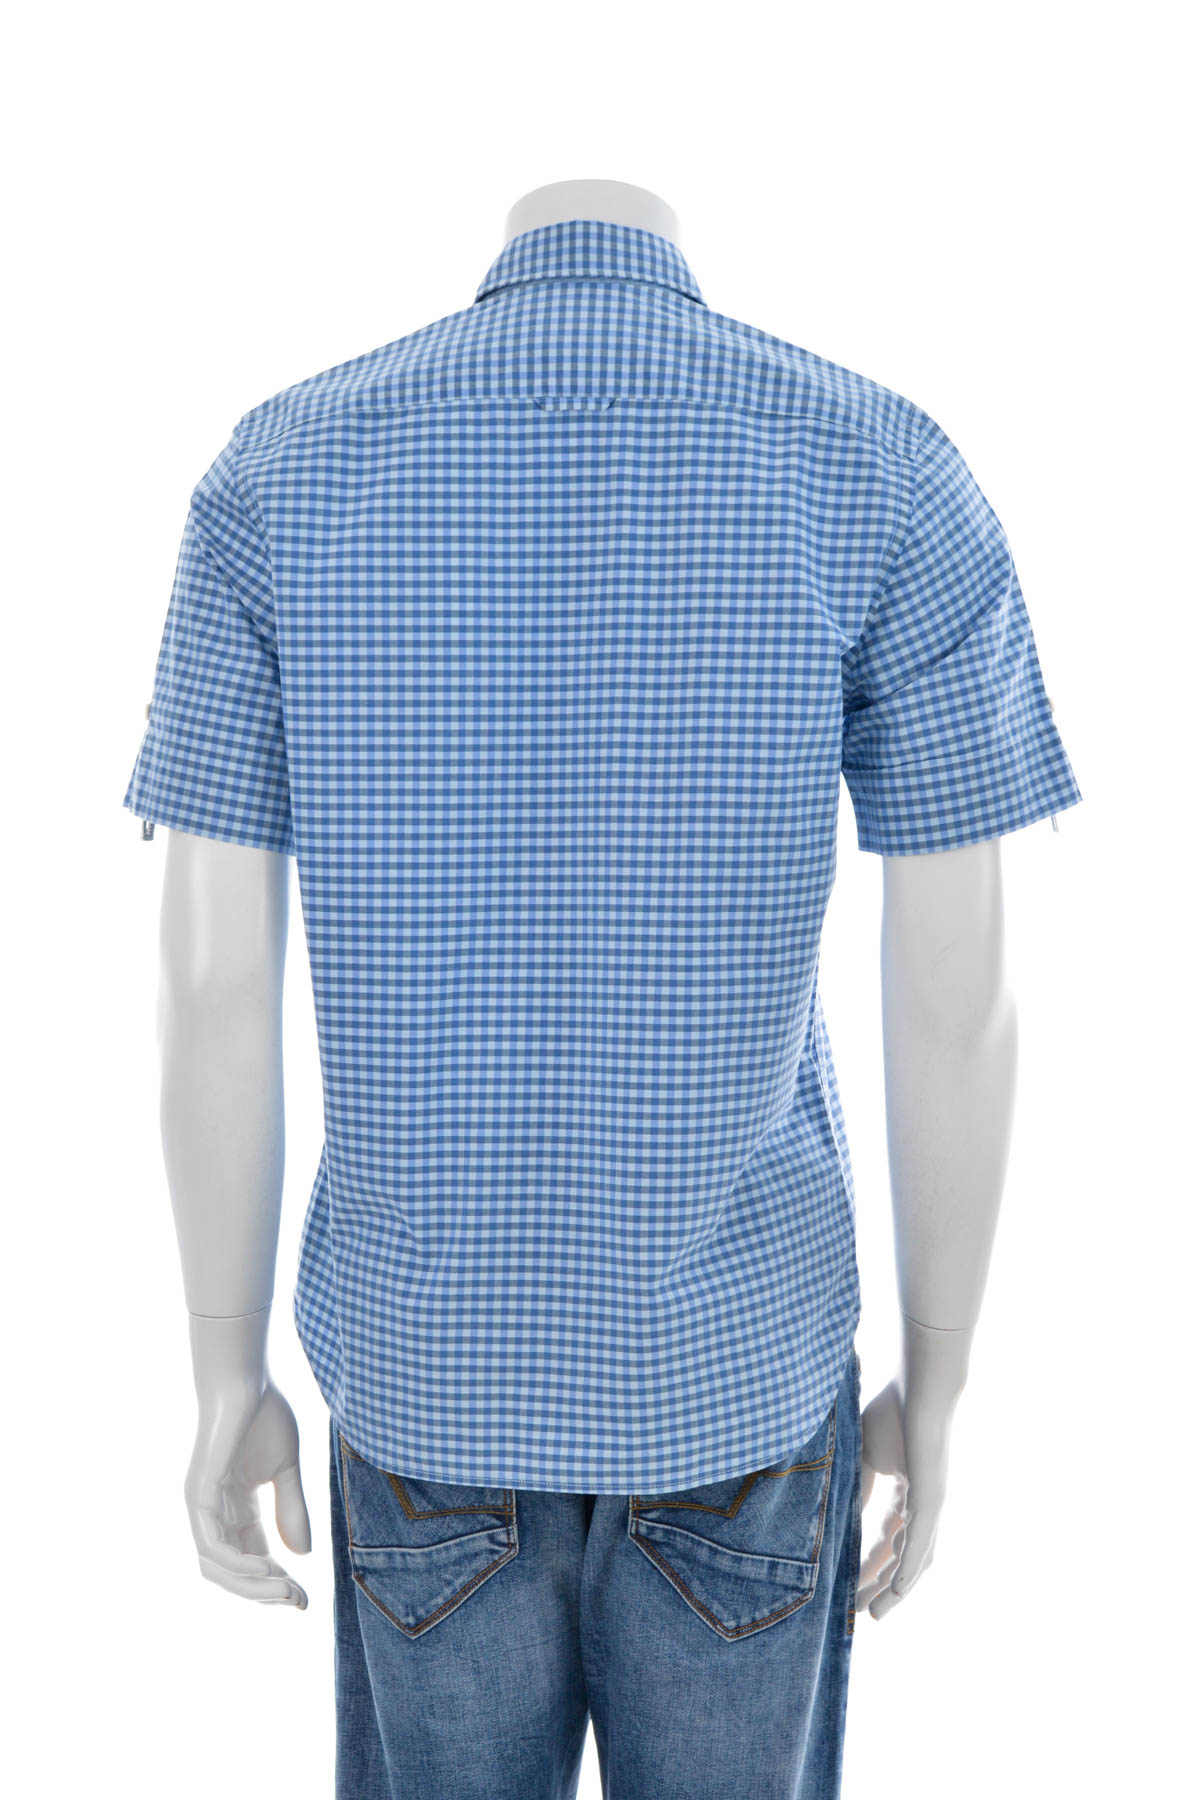 Men's shirt - Marc O'Polo - 1